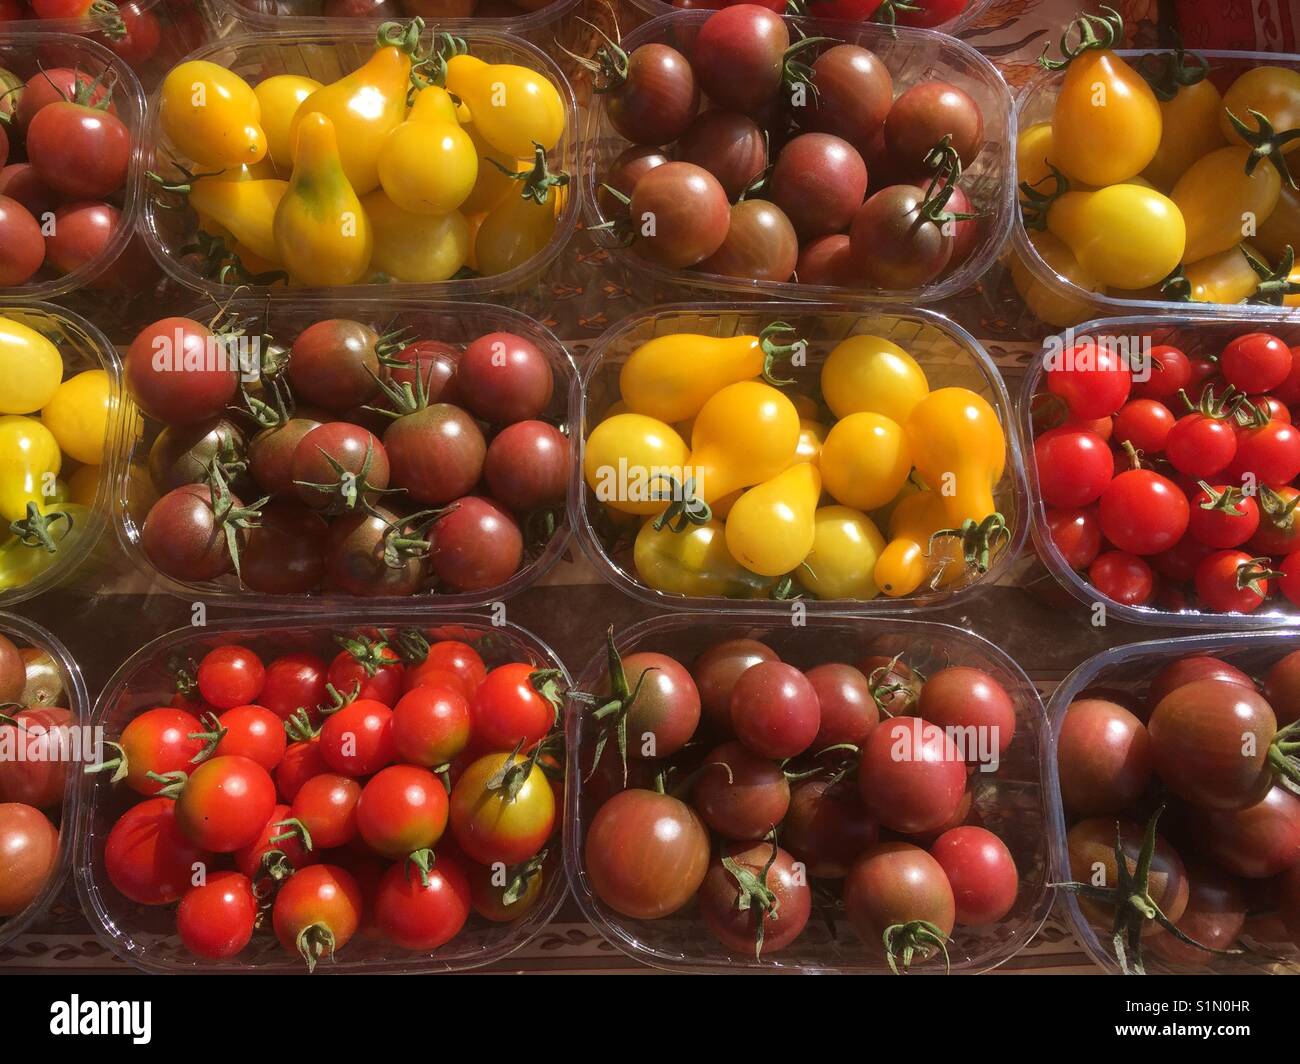 Punnets contenente diverse varietà di rosso, giallo e arancione di pomodori ciliegini in vendita su un mercato in stallo. Foto Stock